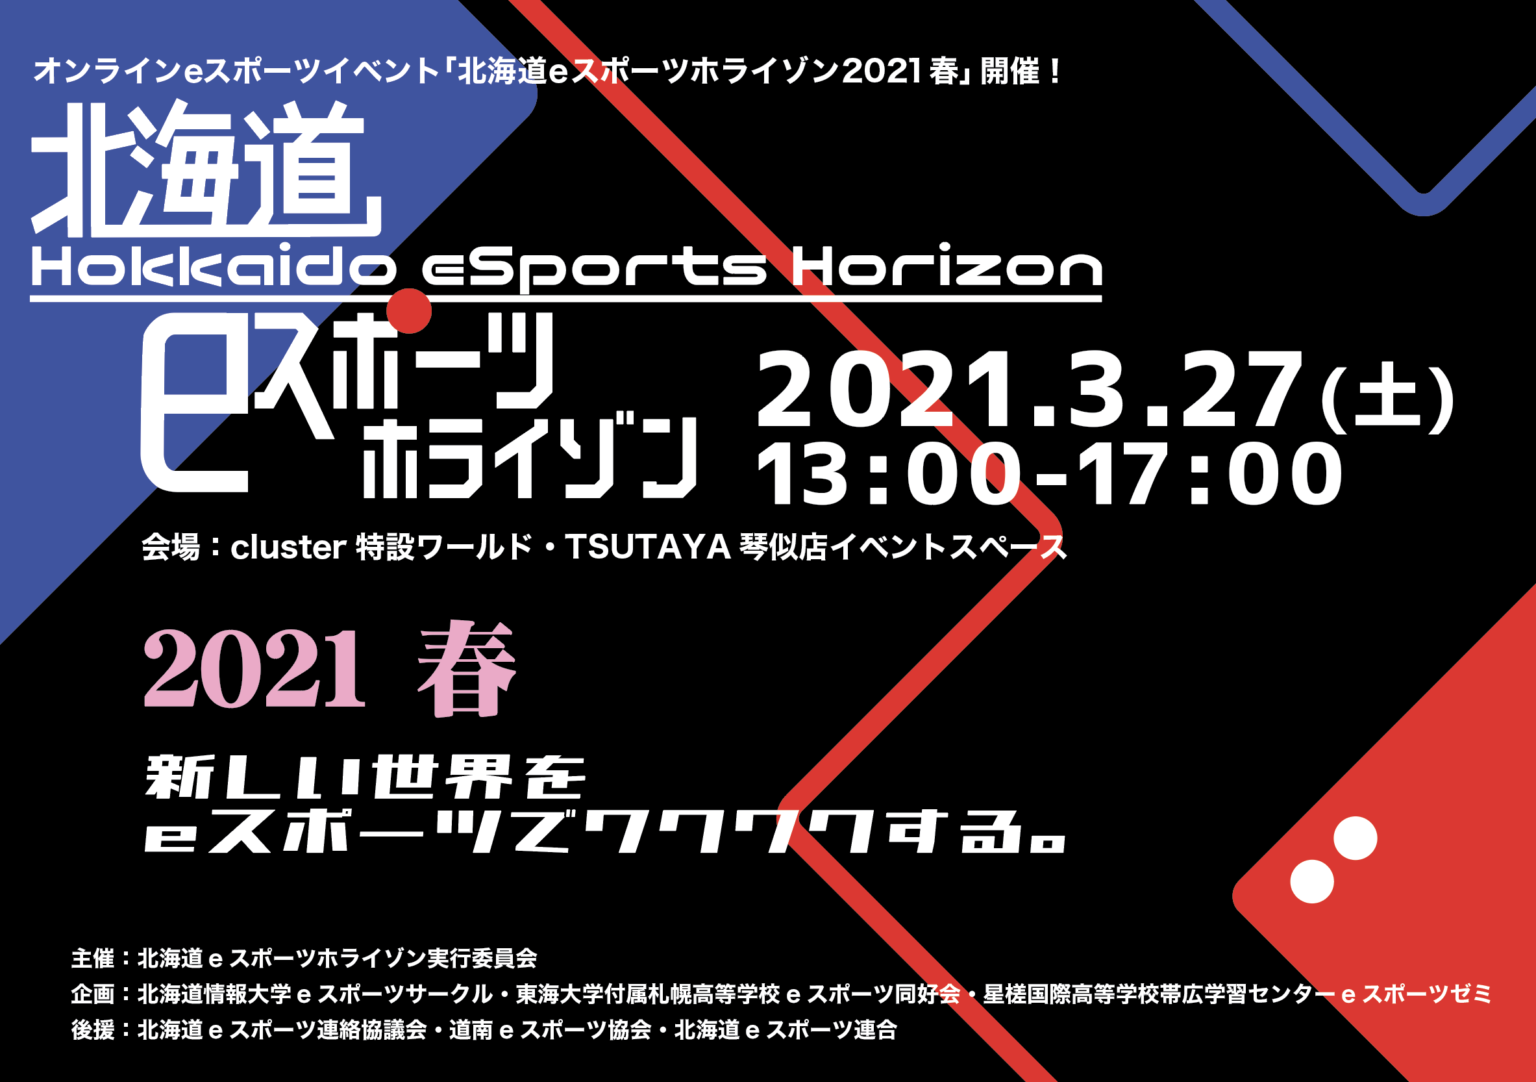 2021 北海道eスポーツホライゾン開催！